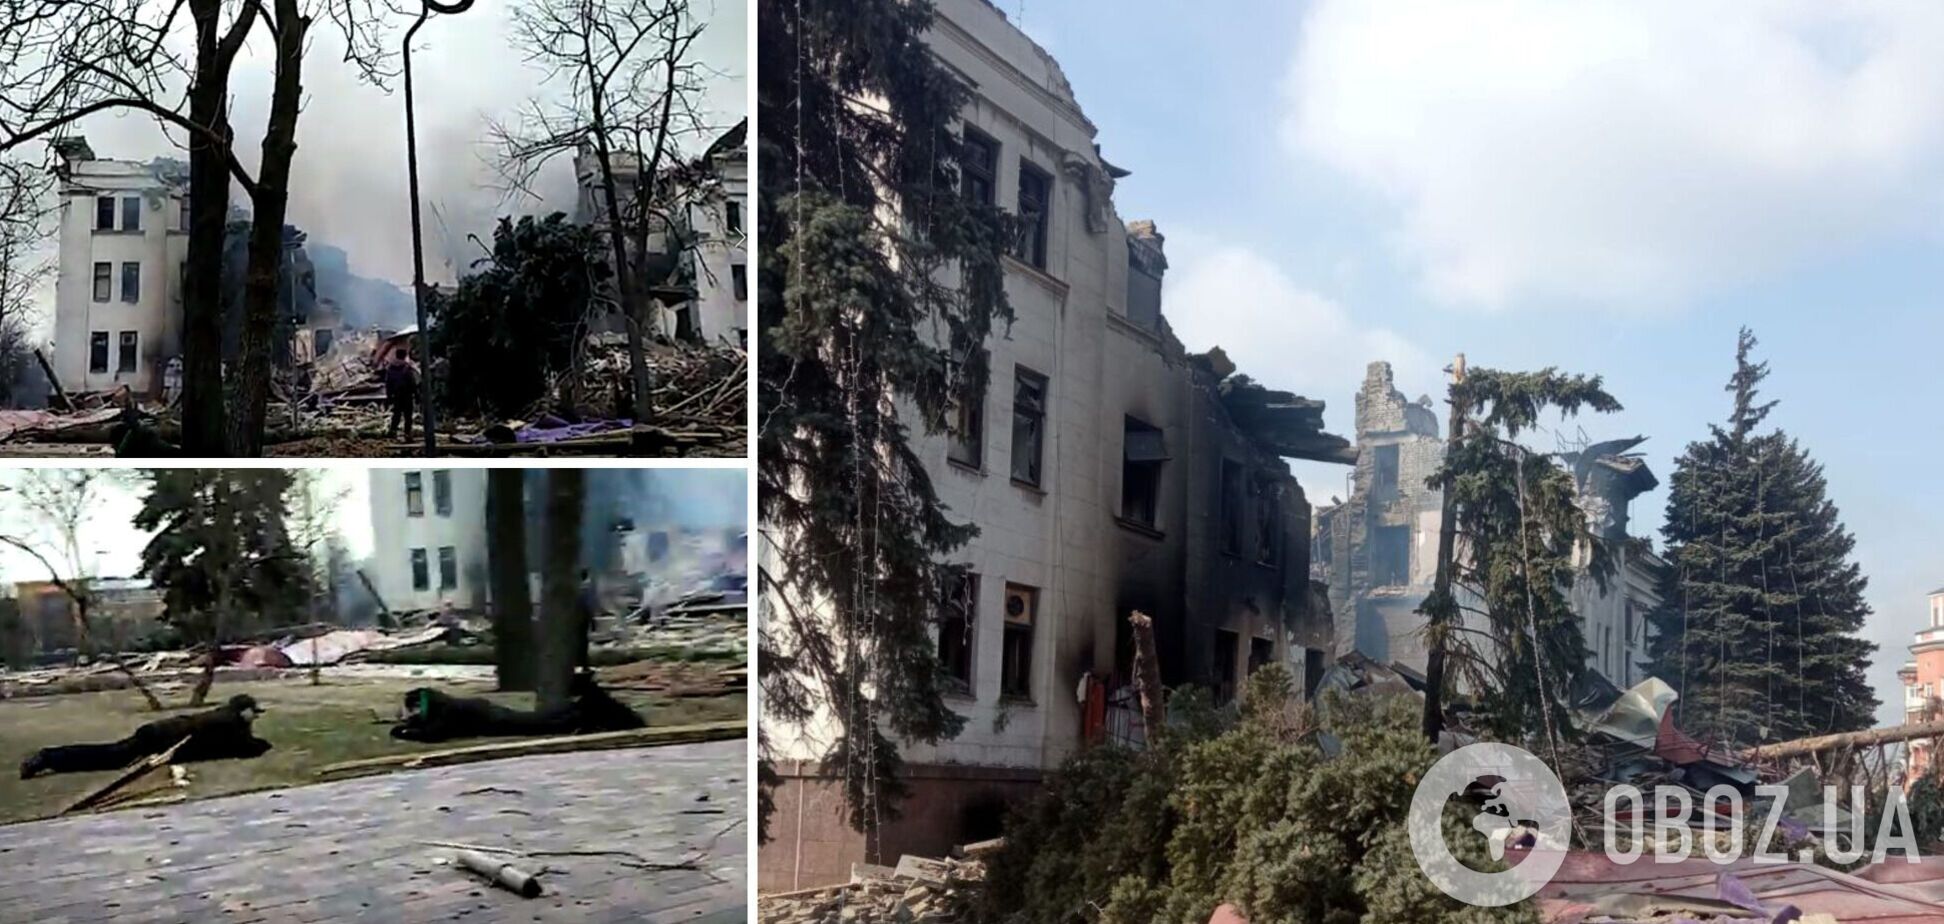 РФ не сможет скрыть удар по драмтеатру в Мариуполе: появилось видео, снятое сразу после бомбардировки